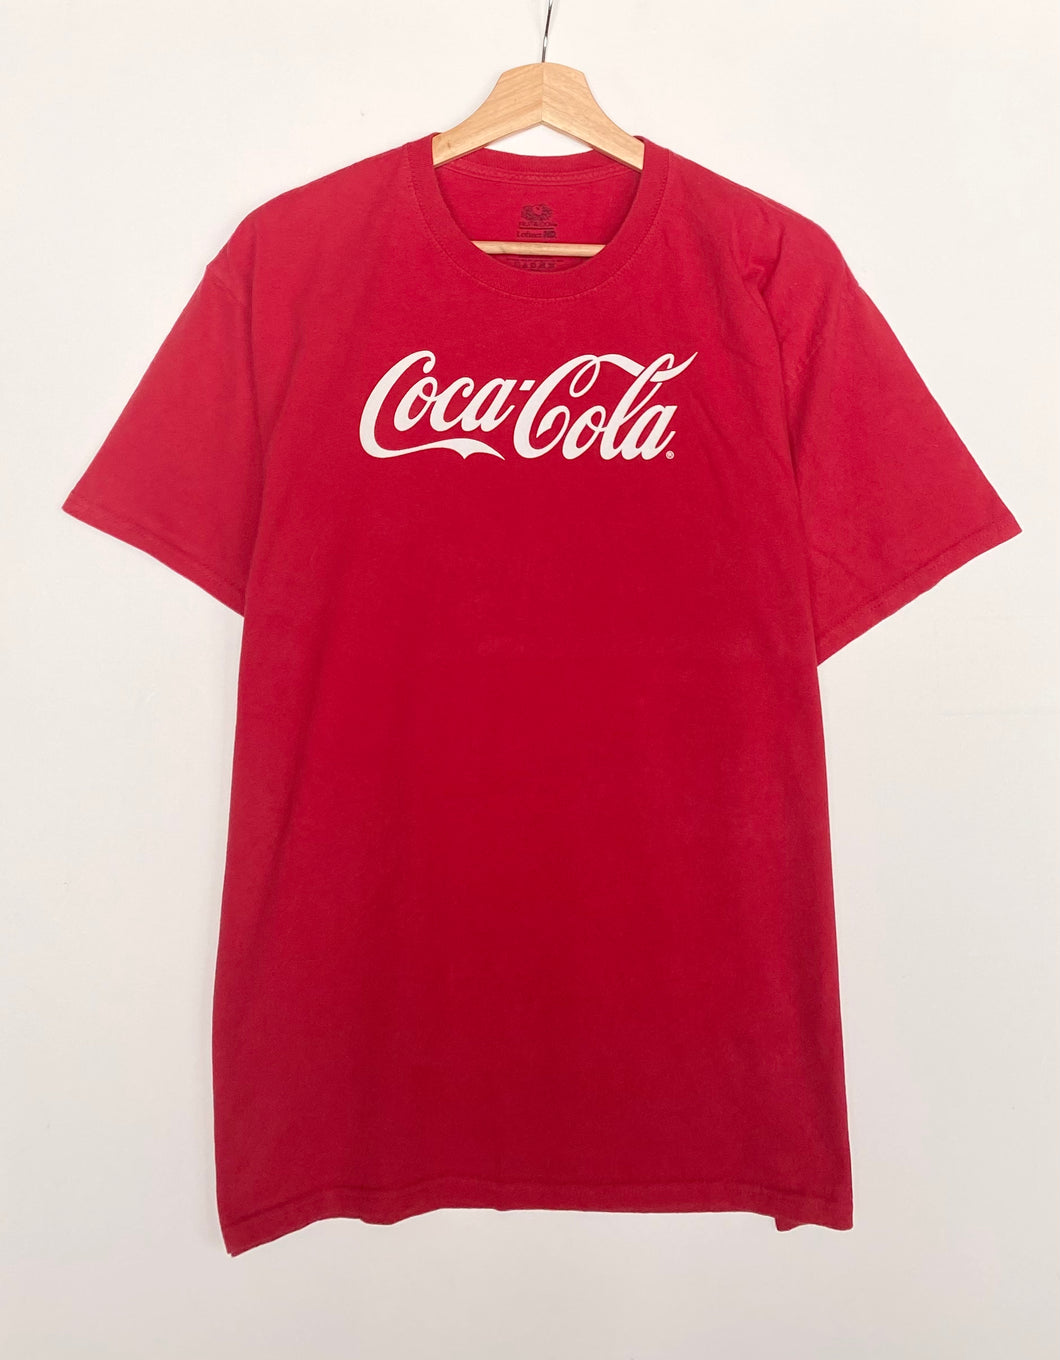 Printed ‘Coca Cola’ t-shirt (L)